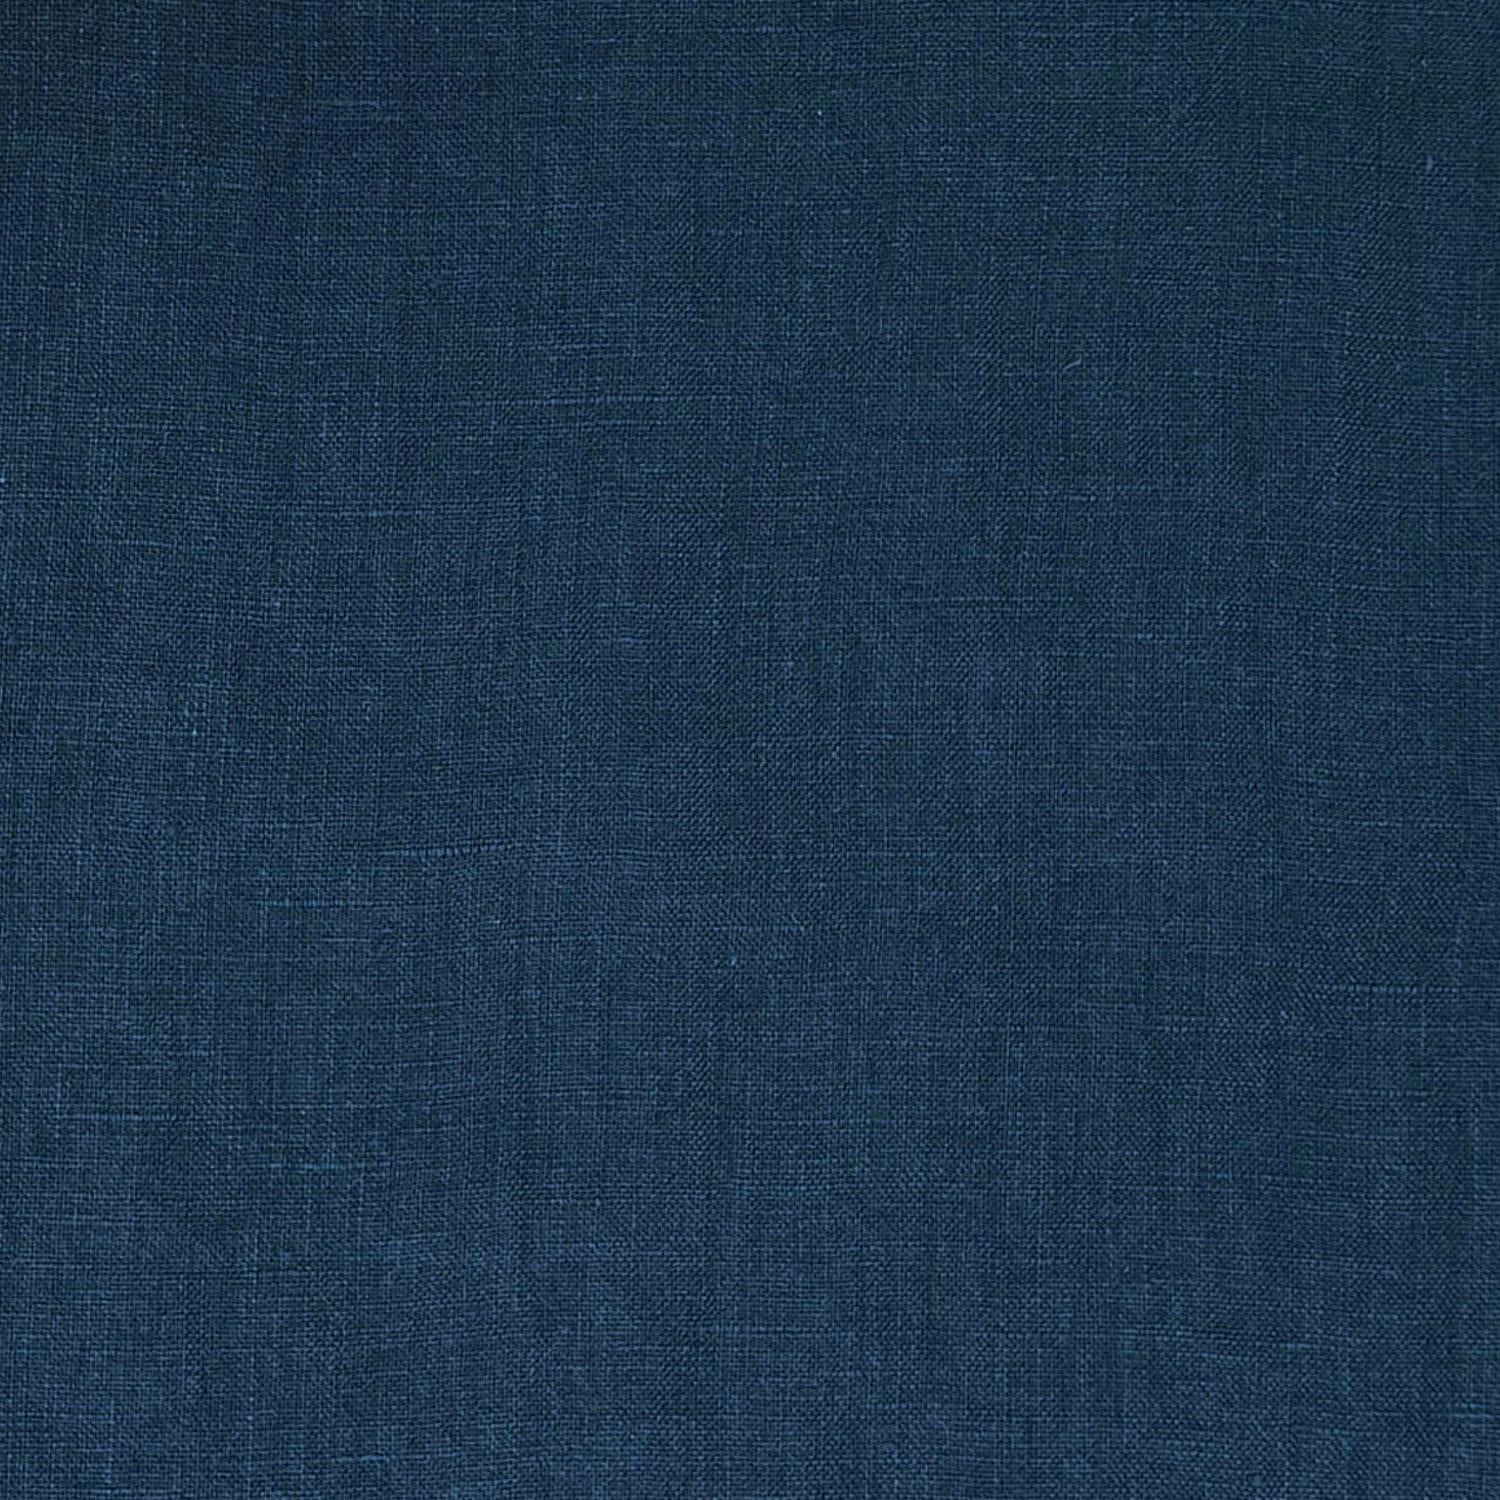 Indigo Blue Linen Flat Sheet